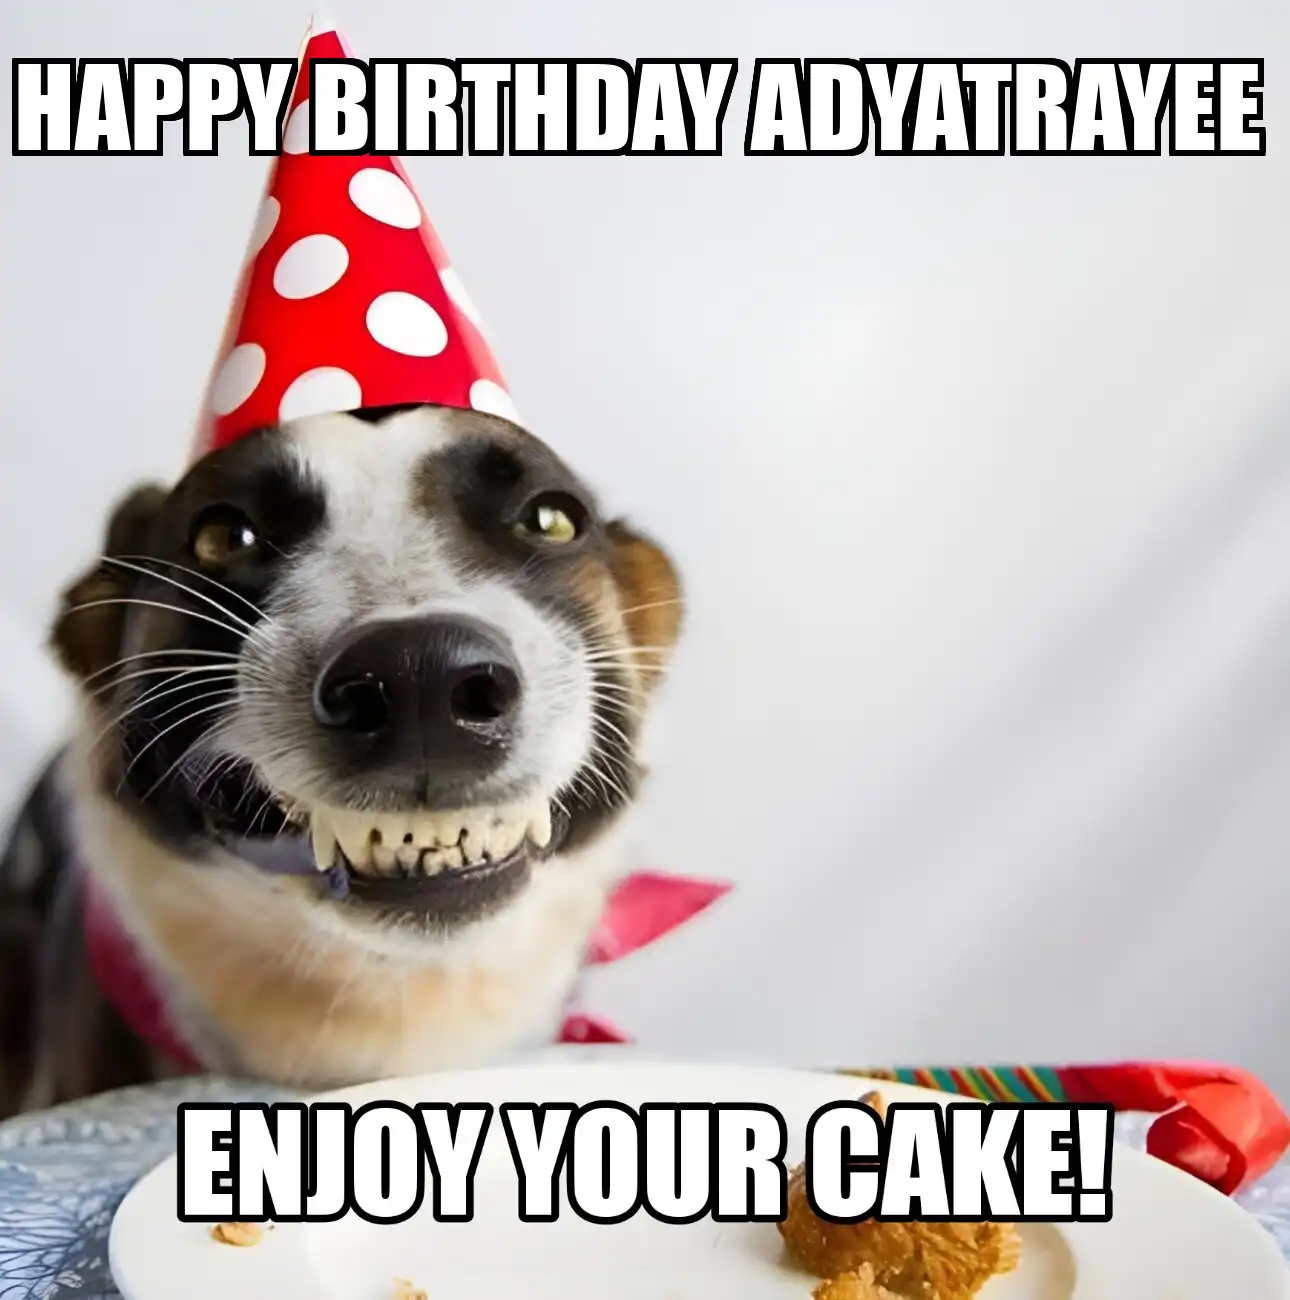 Happy Birthday Adyatrayee Enjoy Your Cake Dog Meme